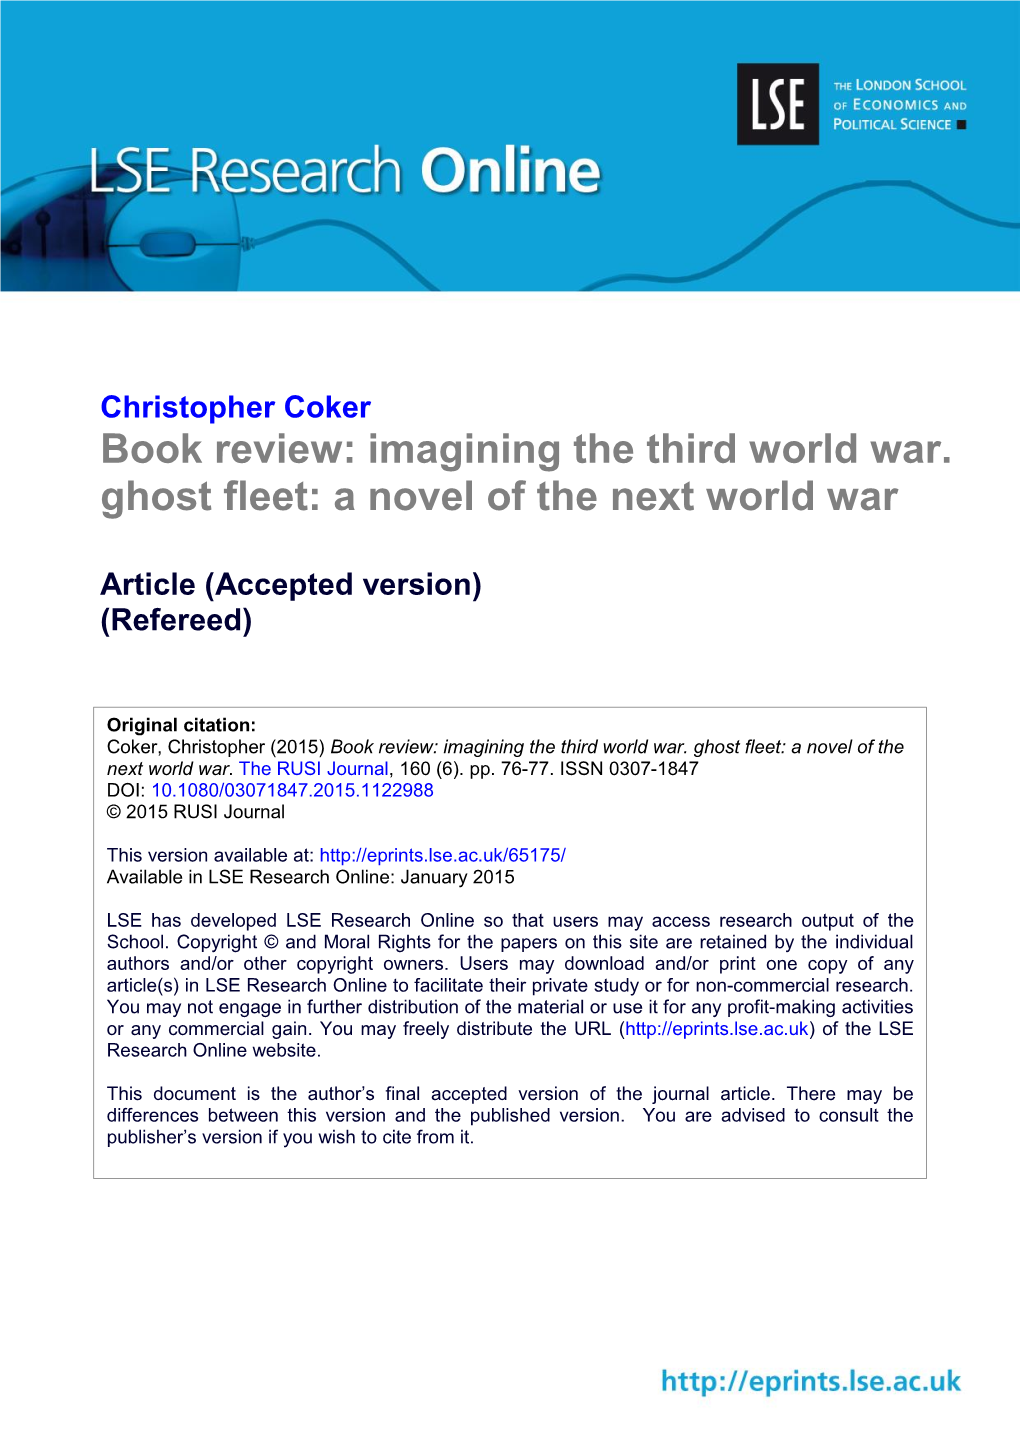 Book Review: Imagining the Third World War. Ghost Fleet: a Novel of the Next World War